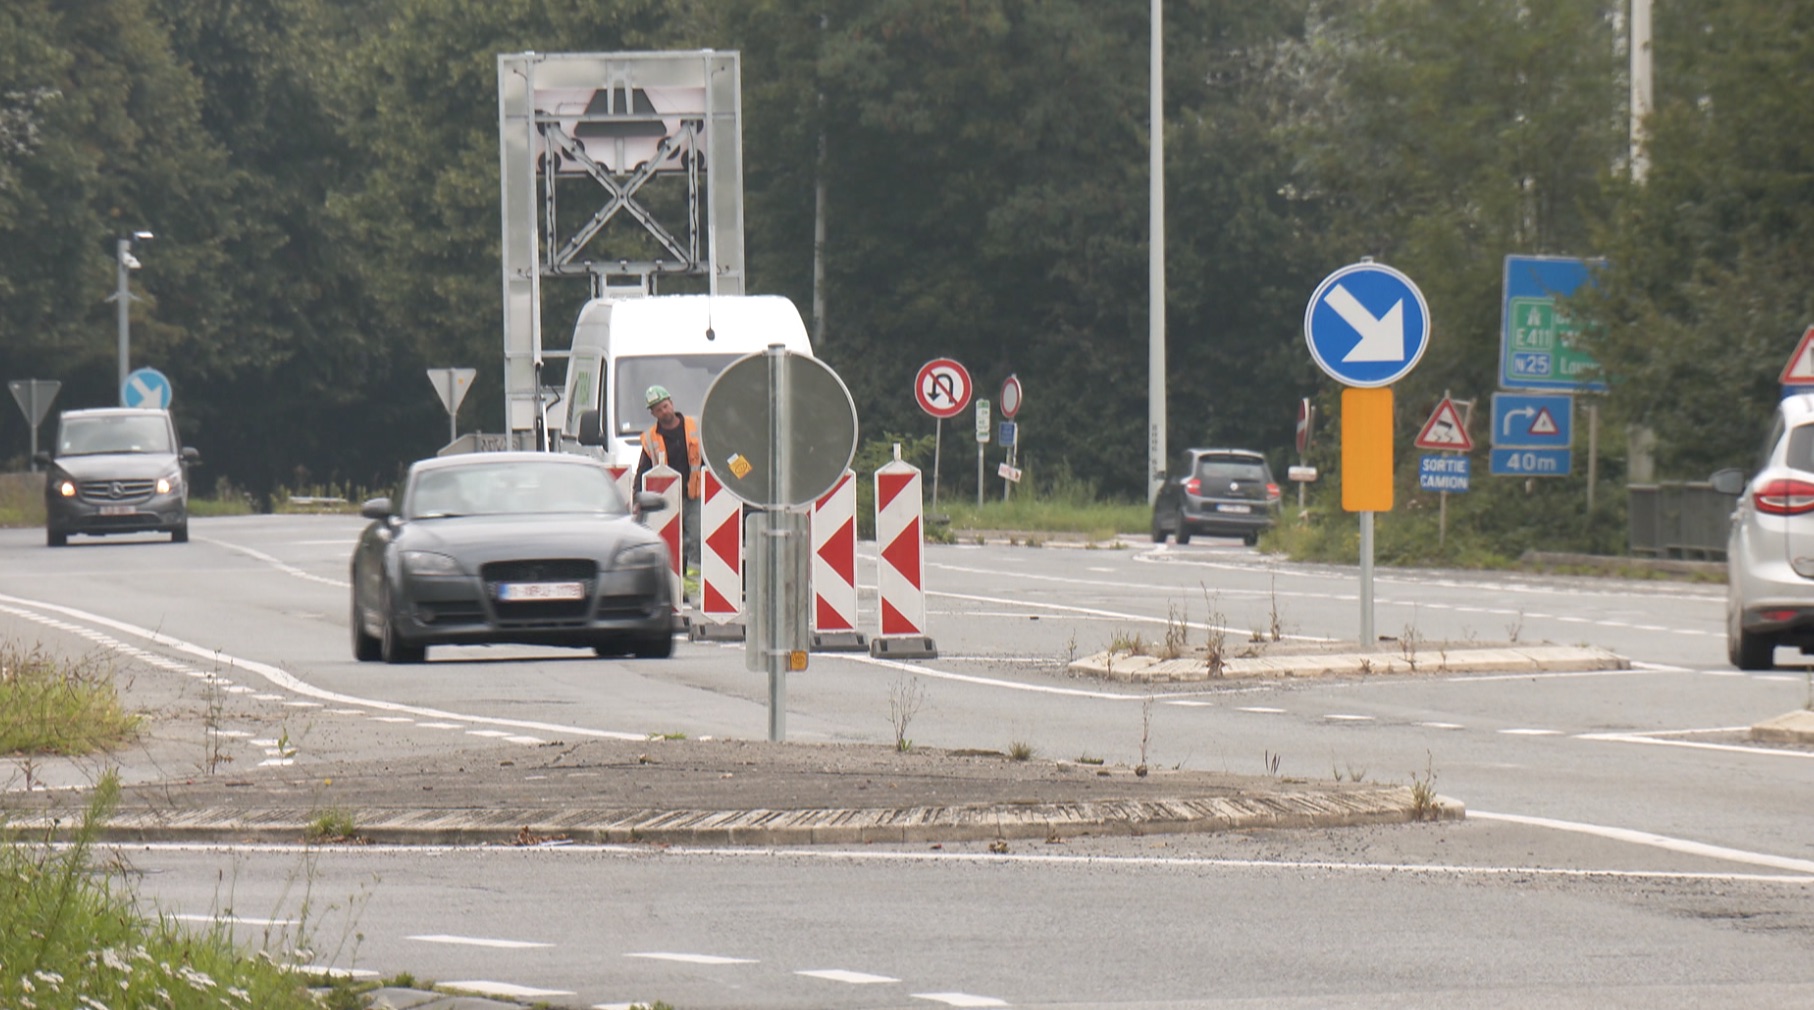 Mont-Saint-Guibert : fermeture de la bretelle d'accès E411 vers Namur pendant 3 jours